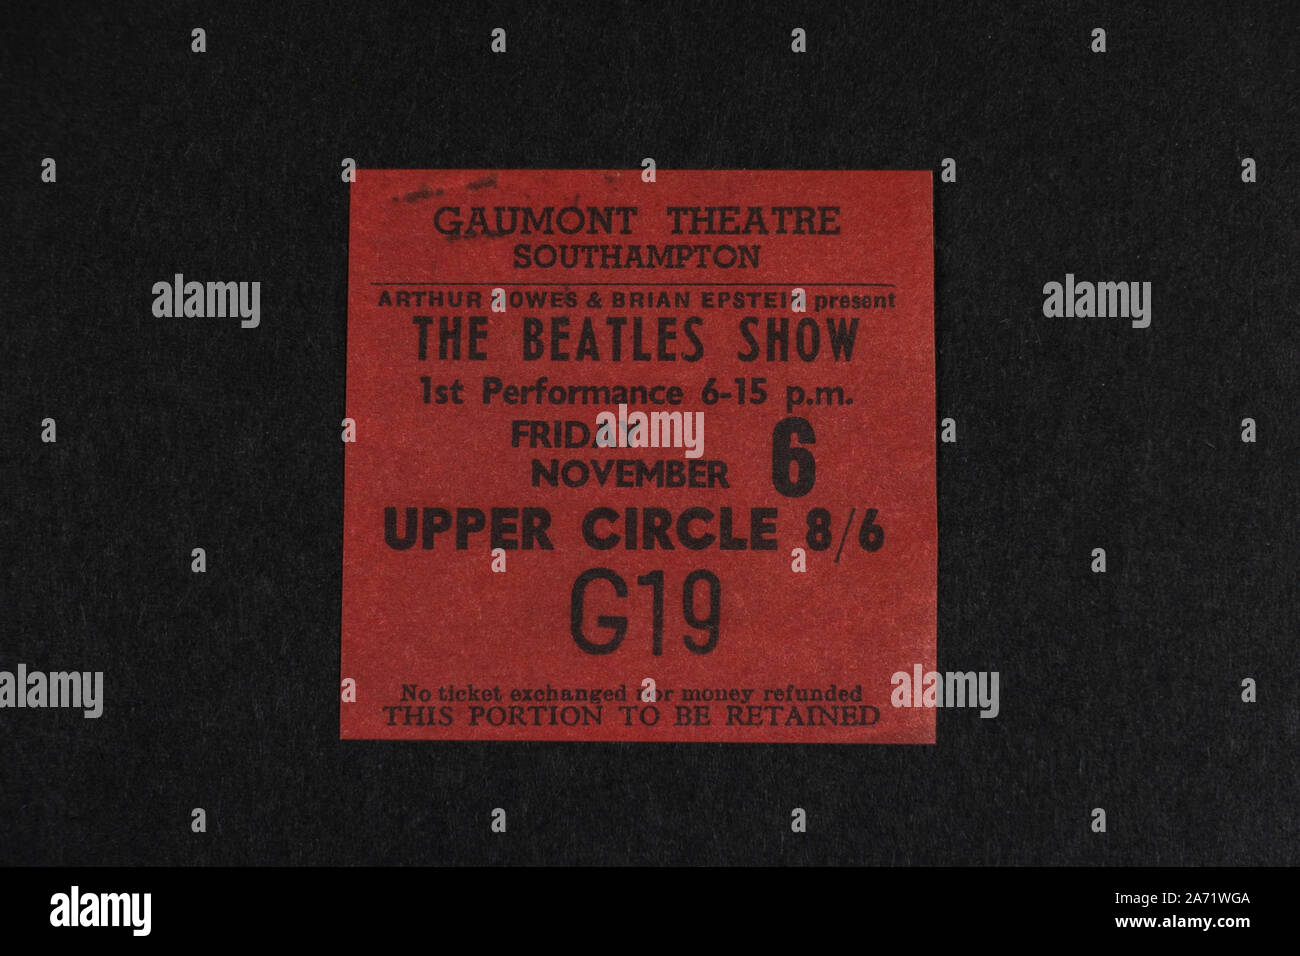 Souvenirs de réplique au sujet des The Beatles : Gaumont Theatre Southampton billet de concert pour les Beatles Show le 6 novembre 1964. Banque D'Images